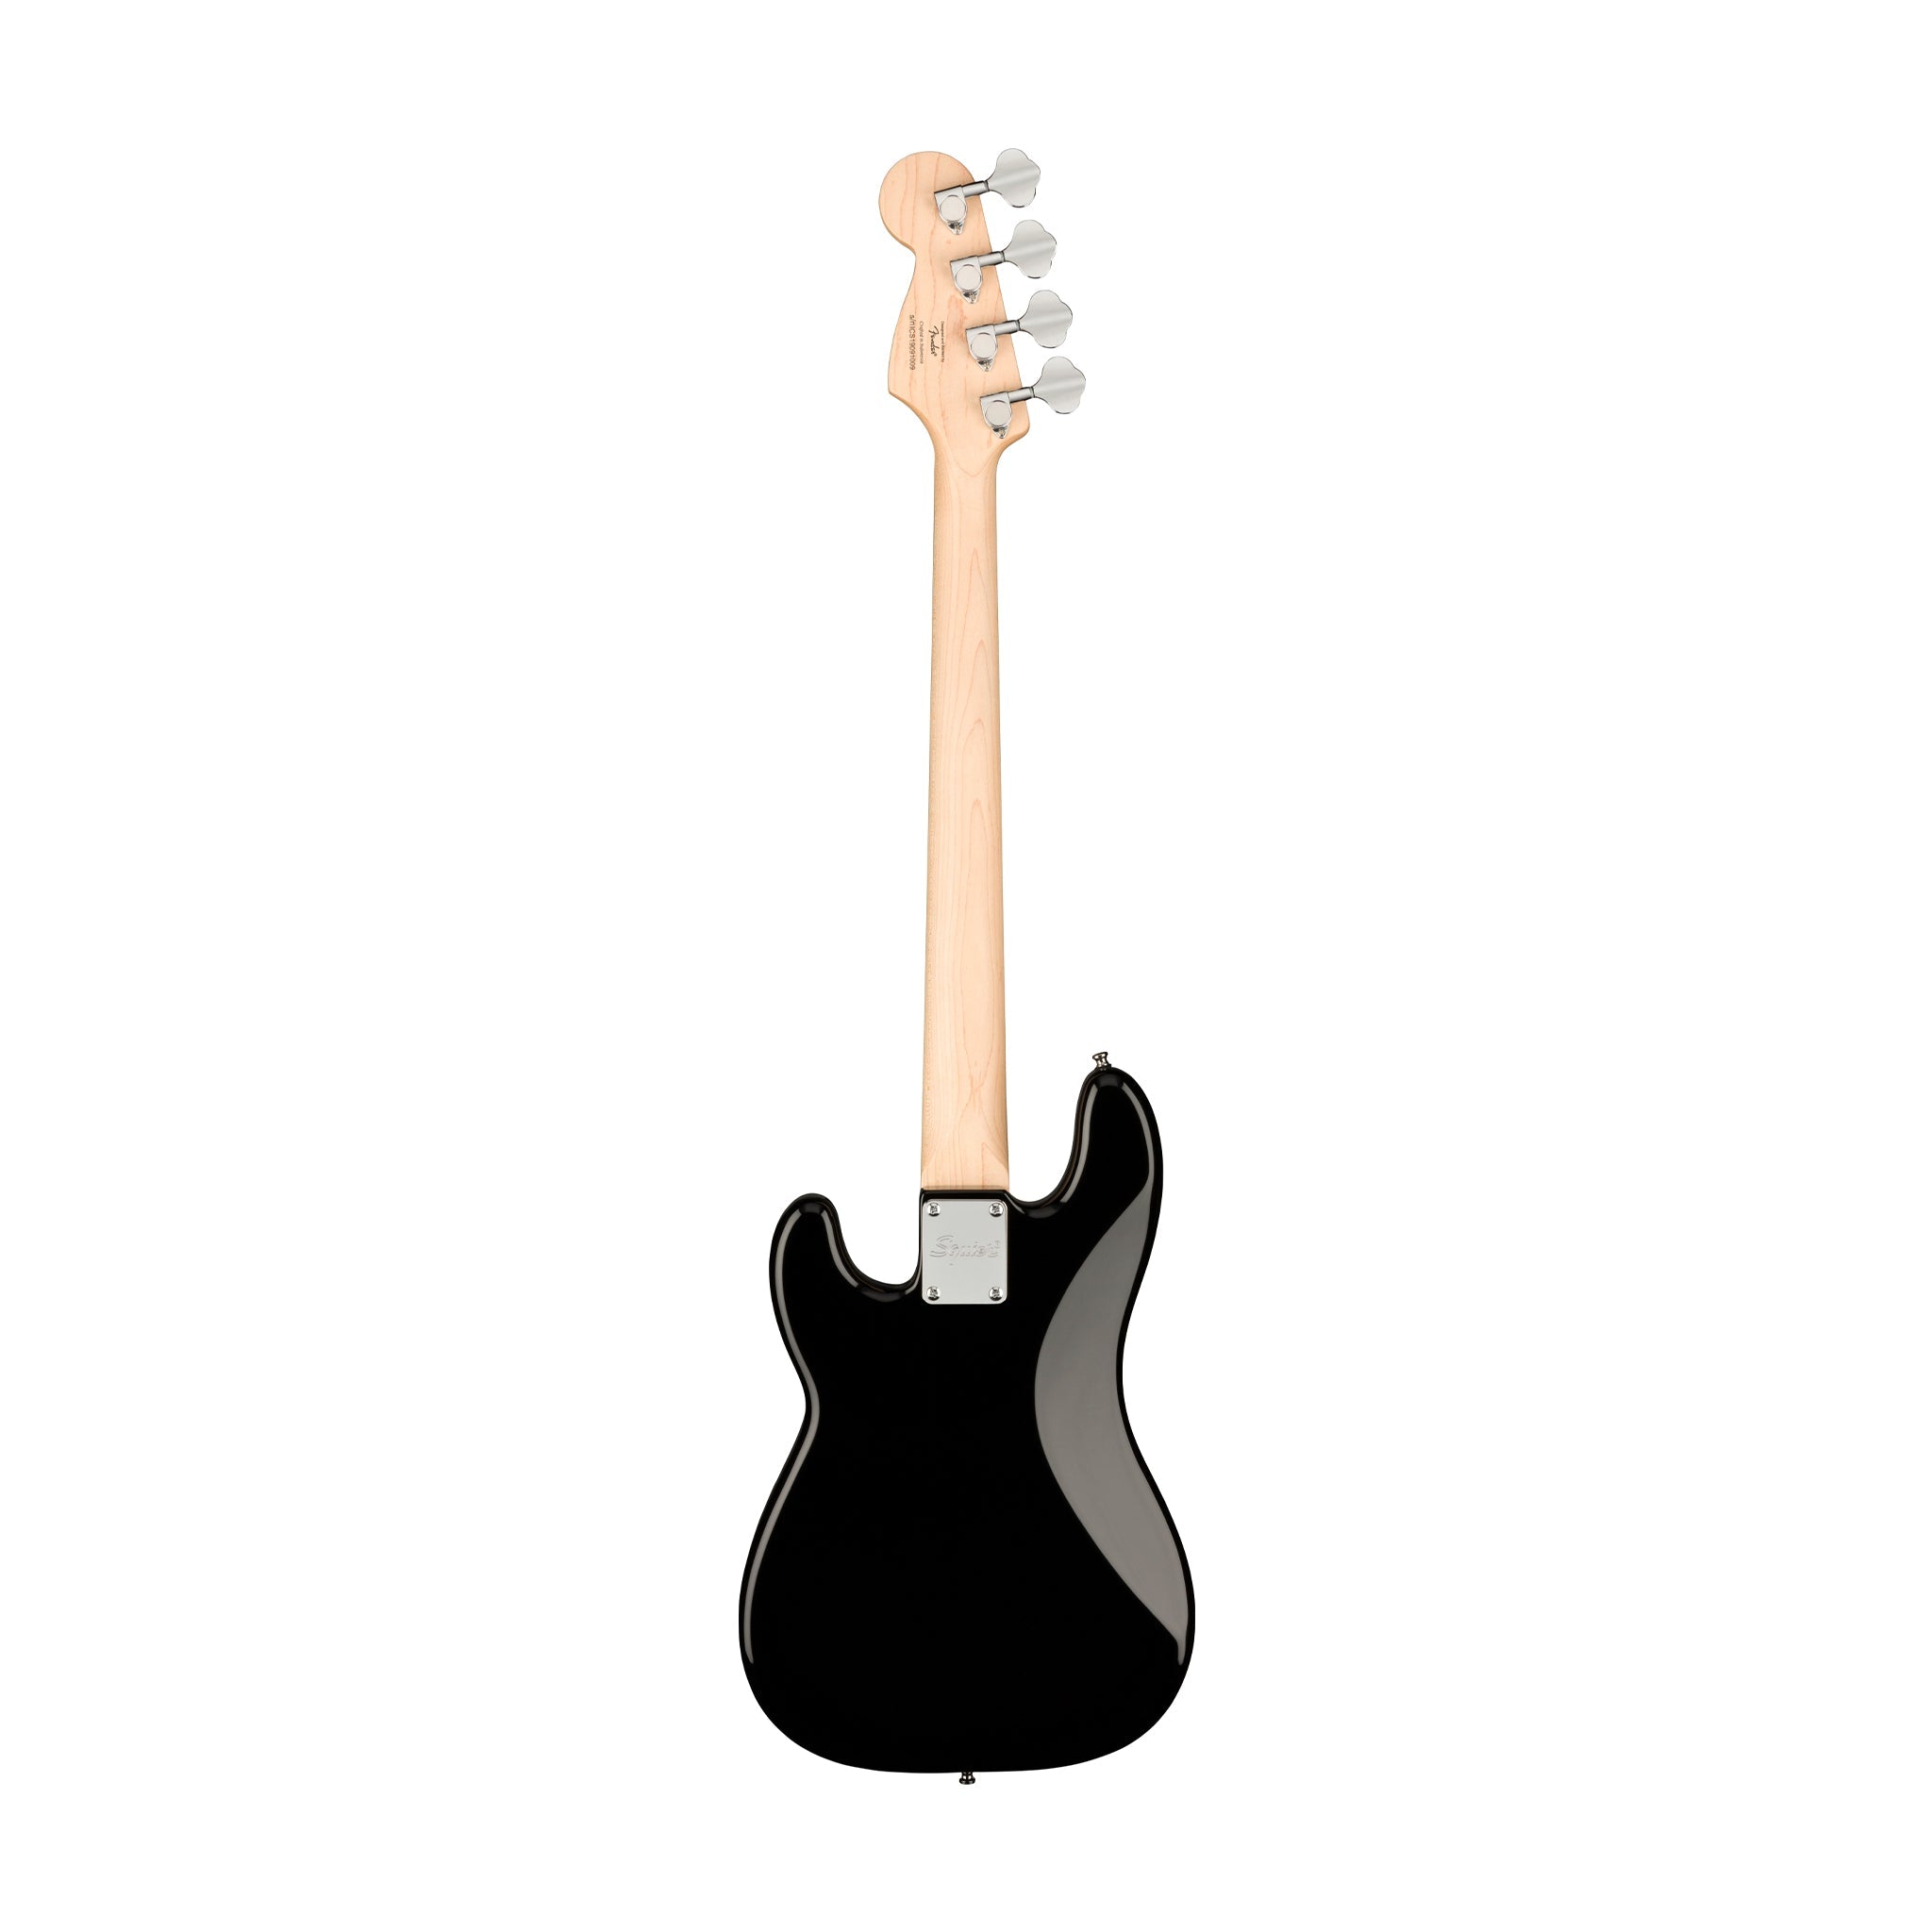 Squier Mini Precision Bass Guitar, Laurel FB, Black